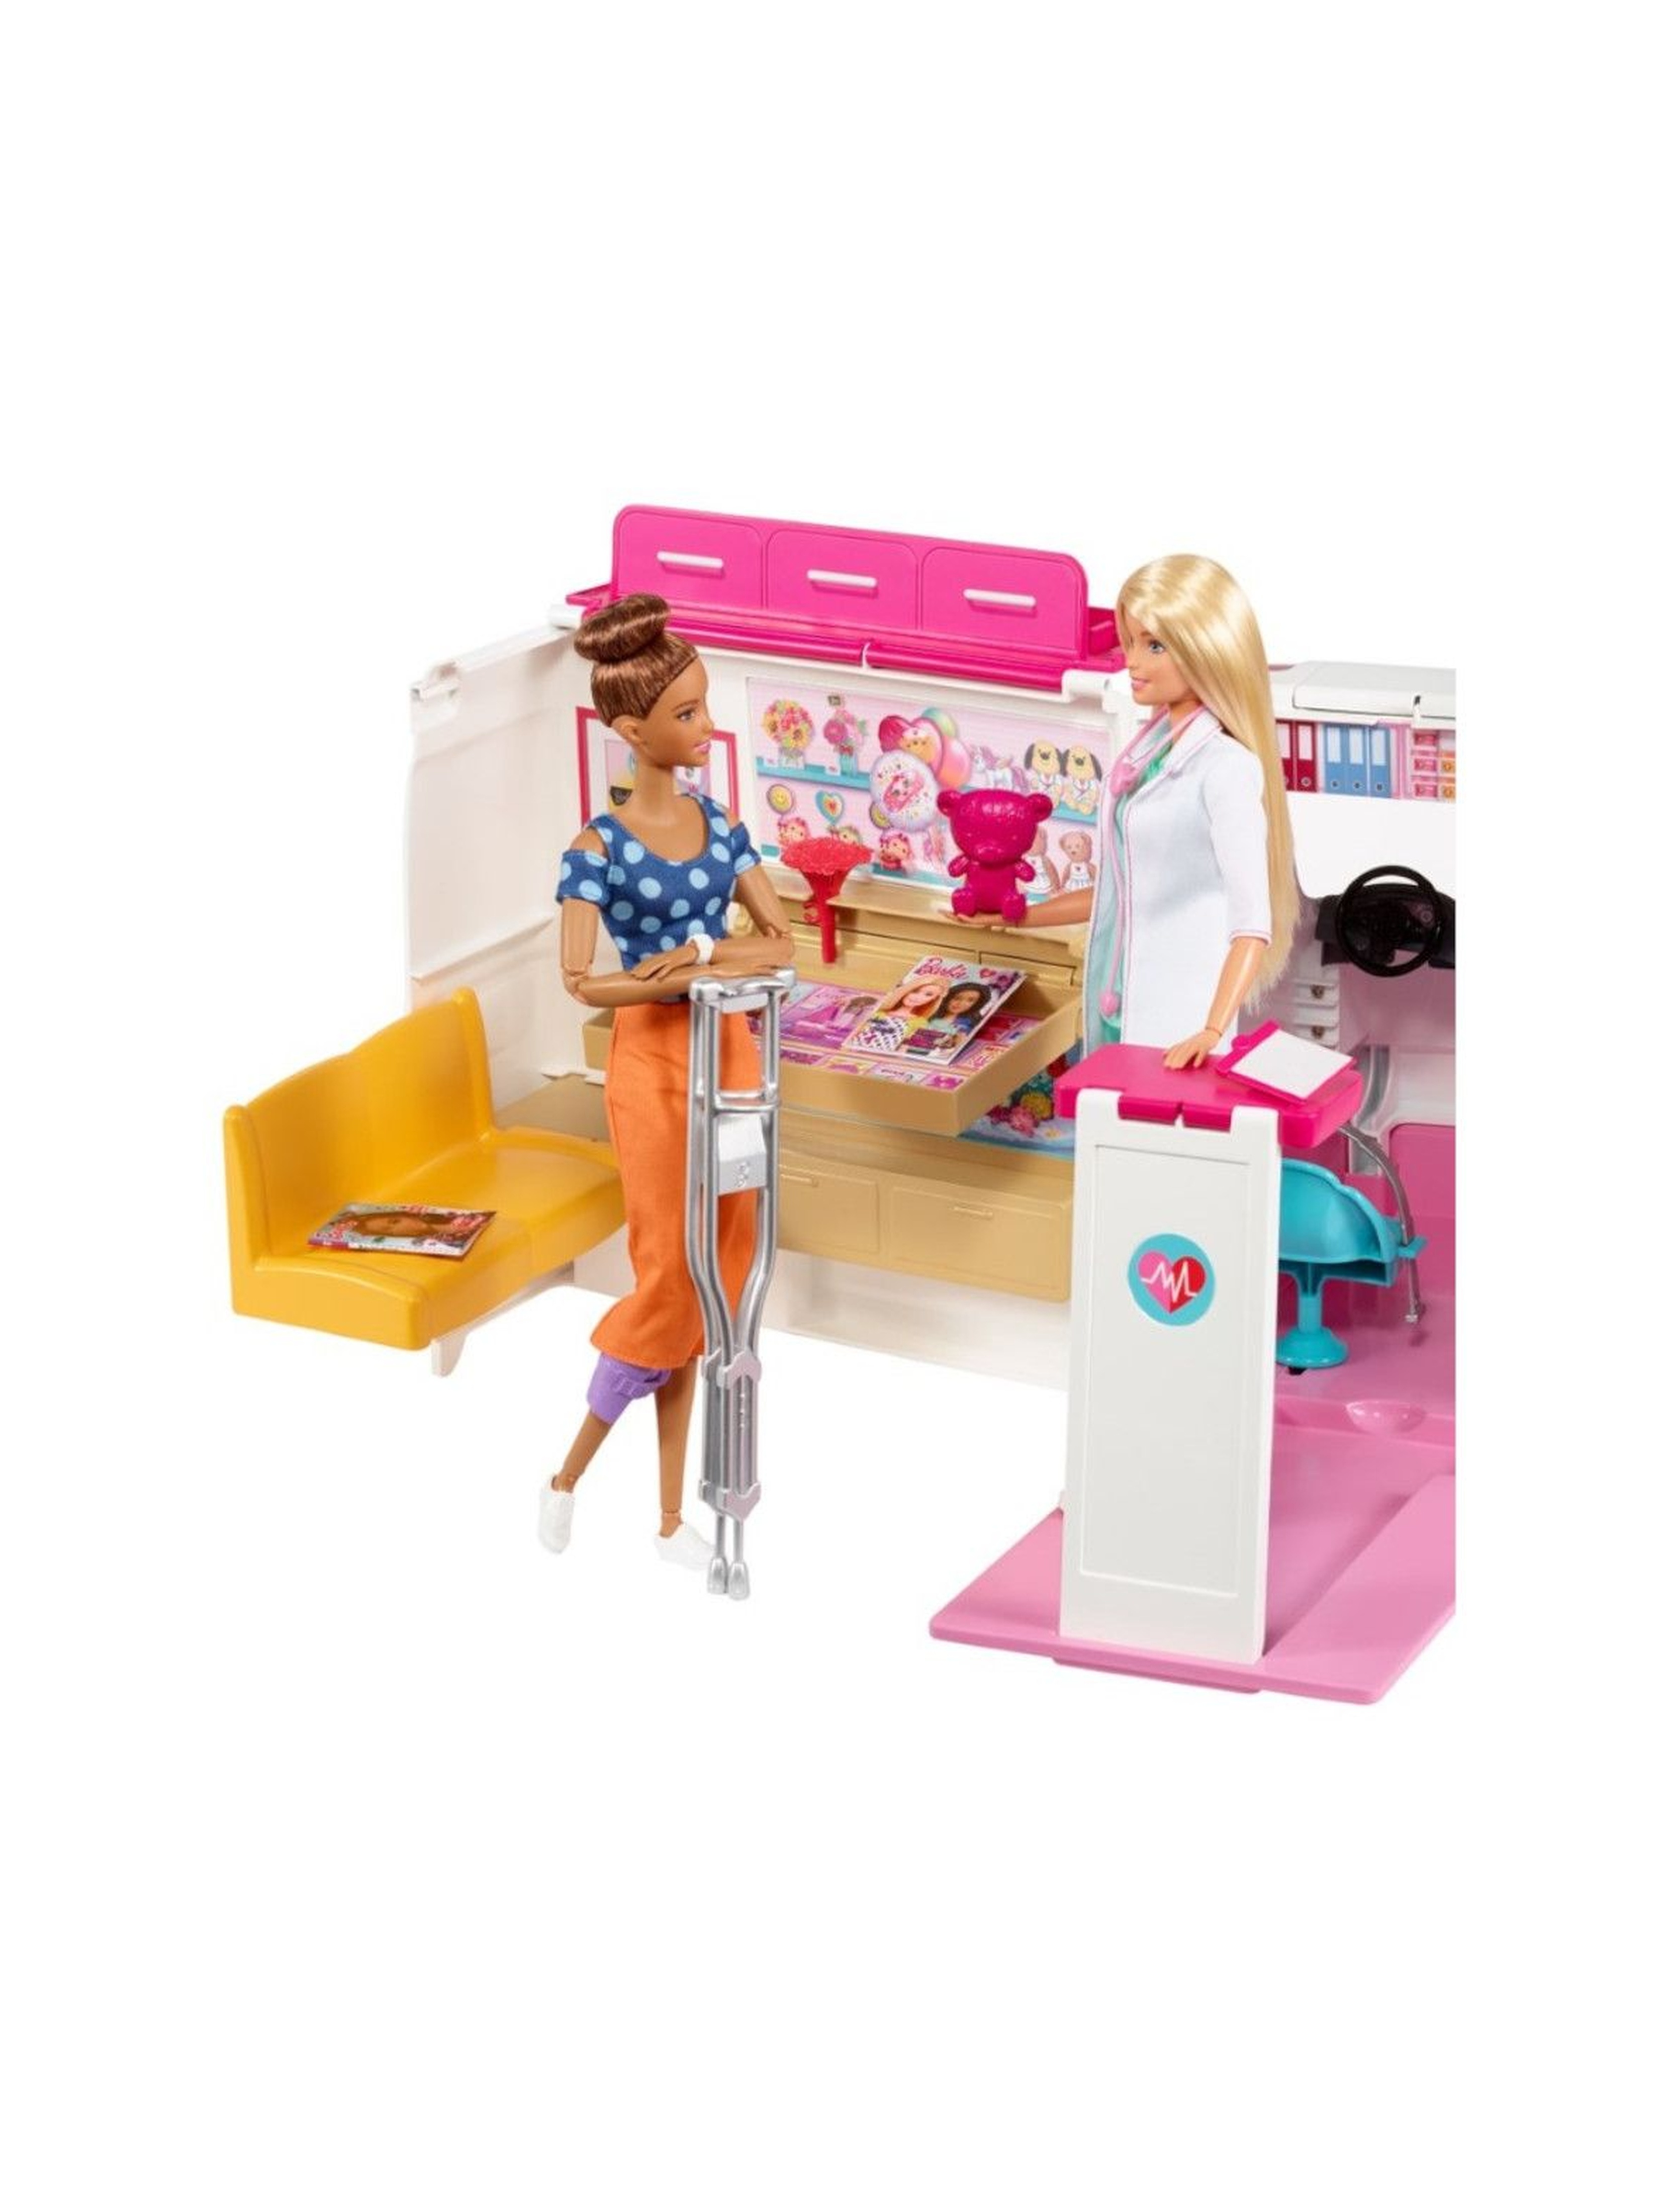 Barbie Karetka - Mobilna klinika wiek 3+